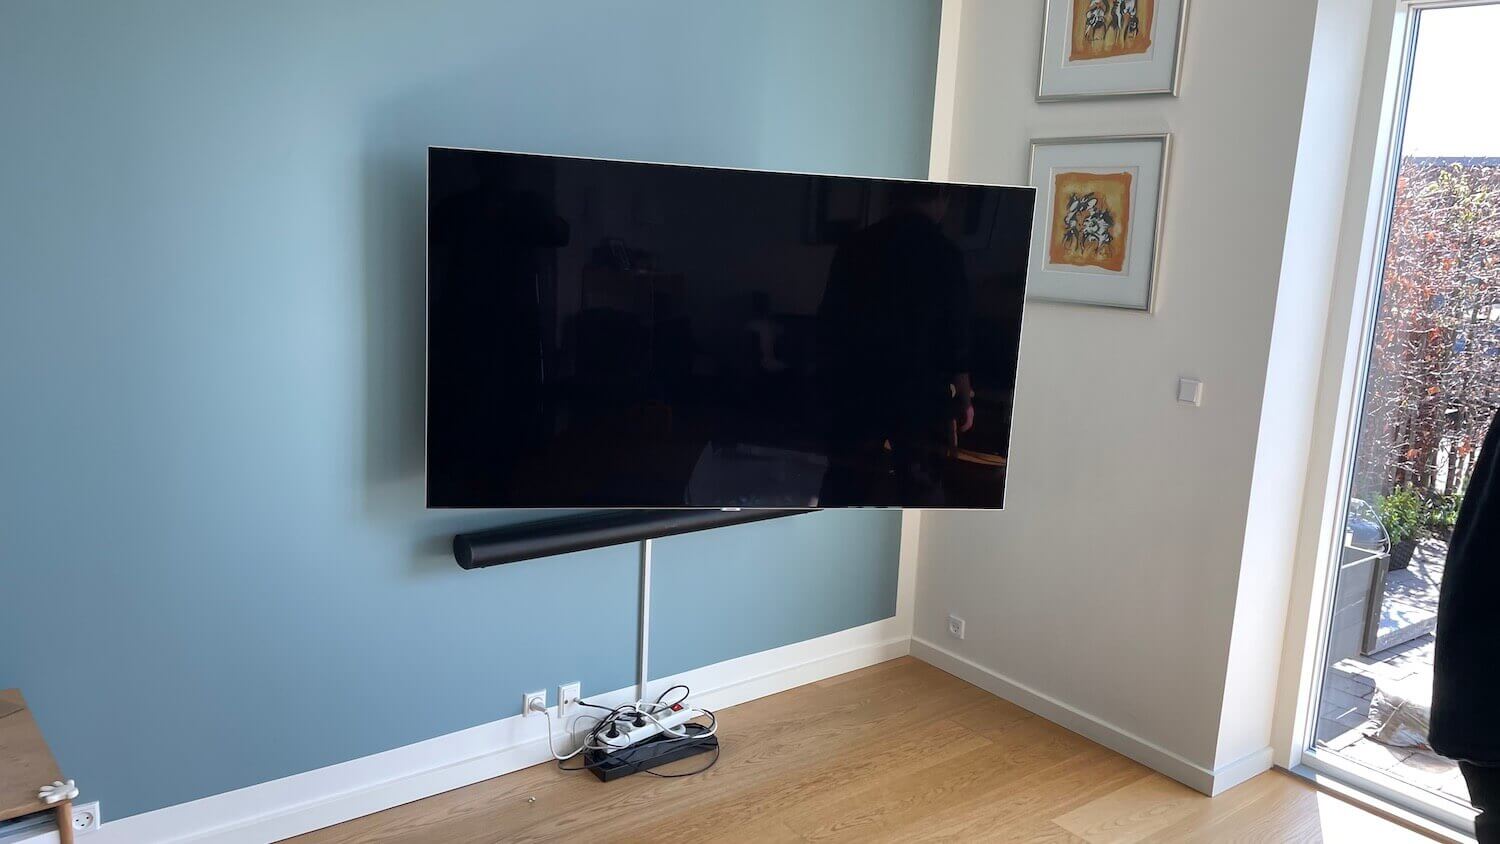 Opsætning af Sonos soundbar, kabelbakke og 55" Samsung TV på vægbeslag med drejefunktion - TV